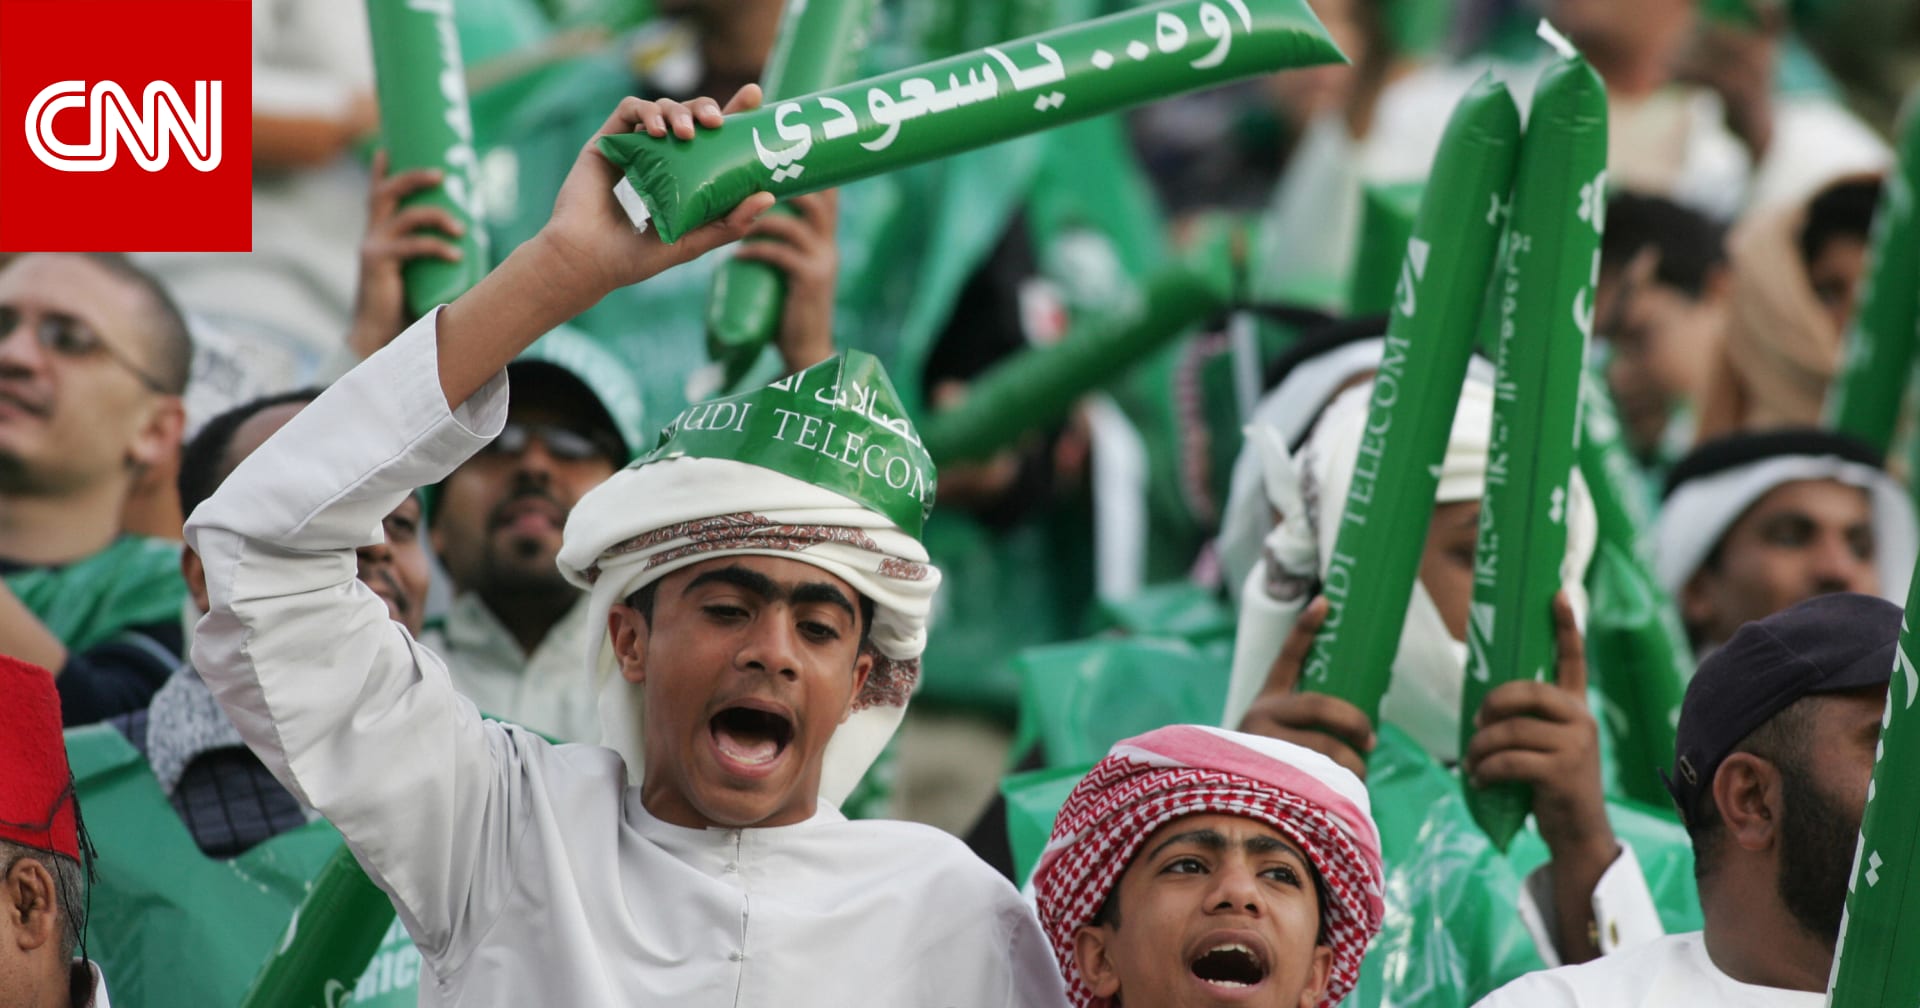 السعودية.. الإعلان عن عودة الجماهير “المحصنين” إلى الملاعب ابتداء من مواجهة المنتخب الفلسطيني